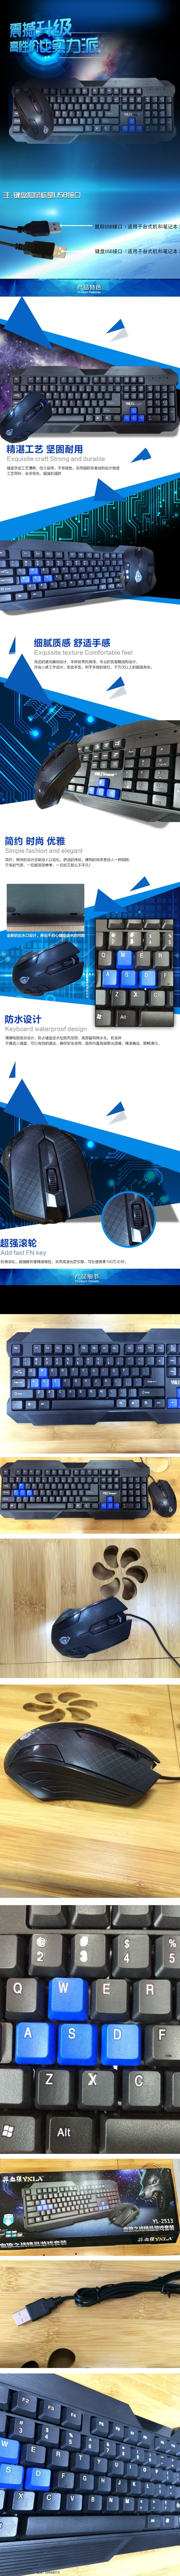 鼠标键盘 键盘详情 鼠标详情 蓝色 白色